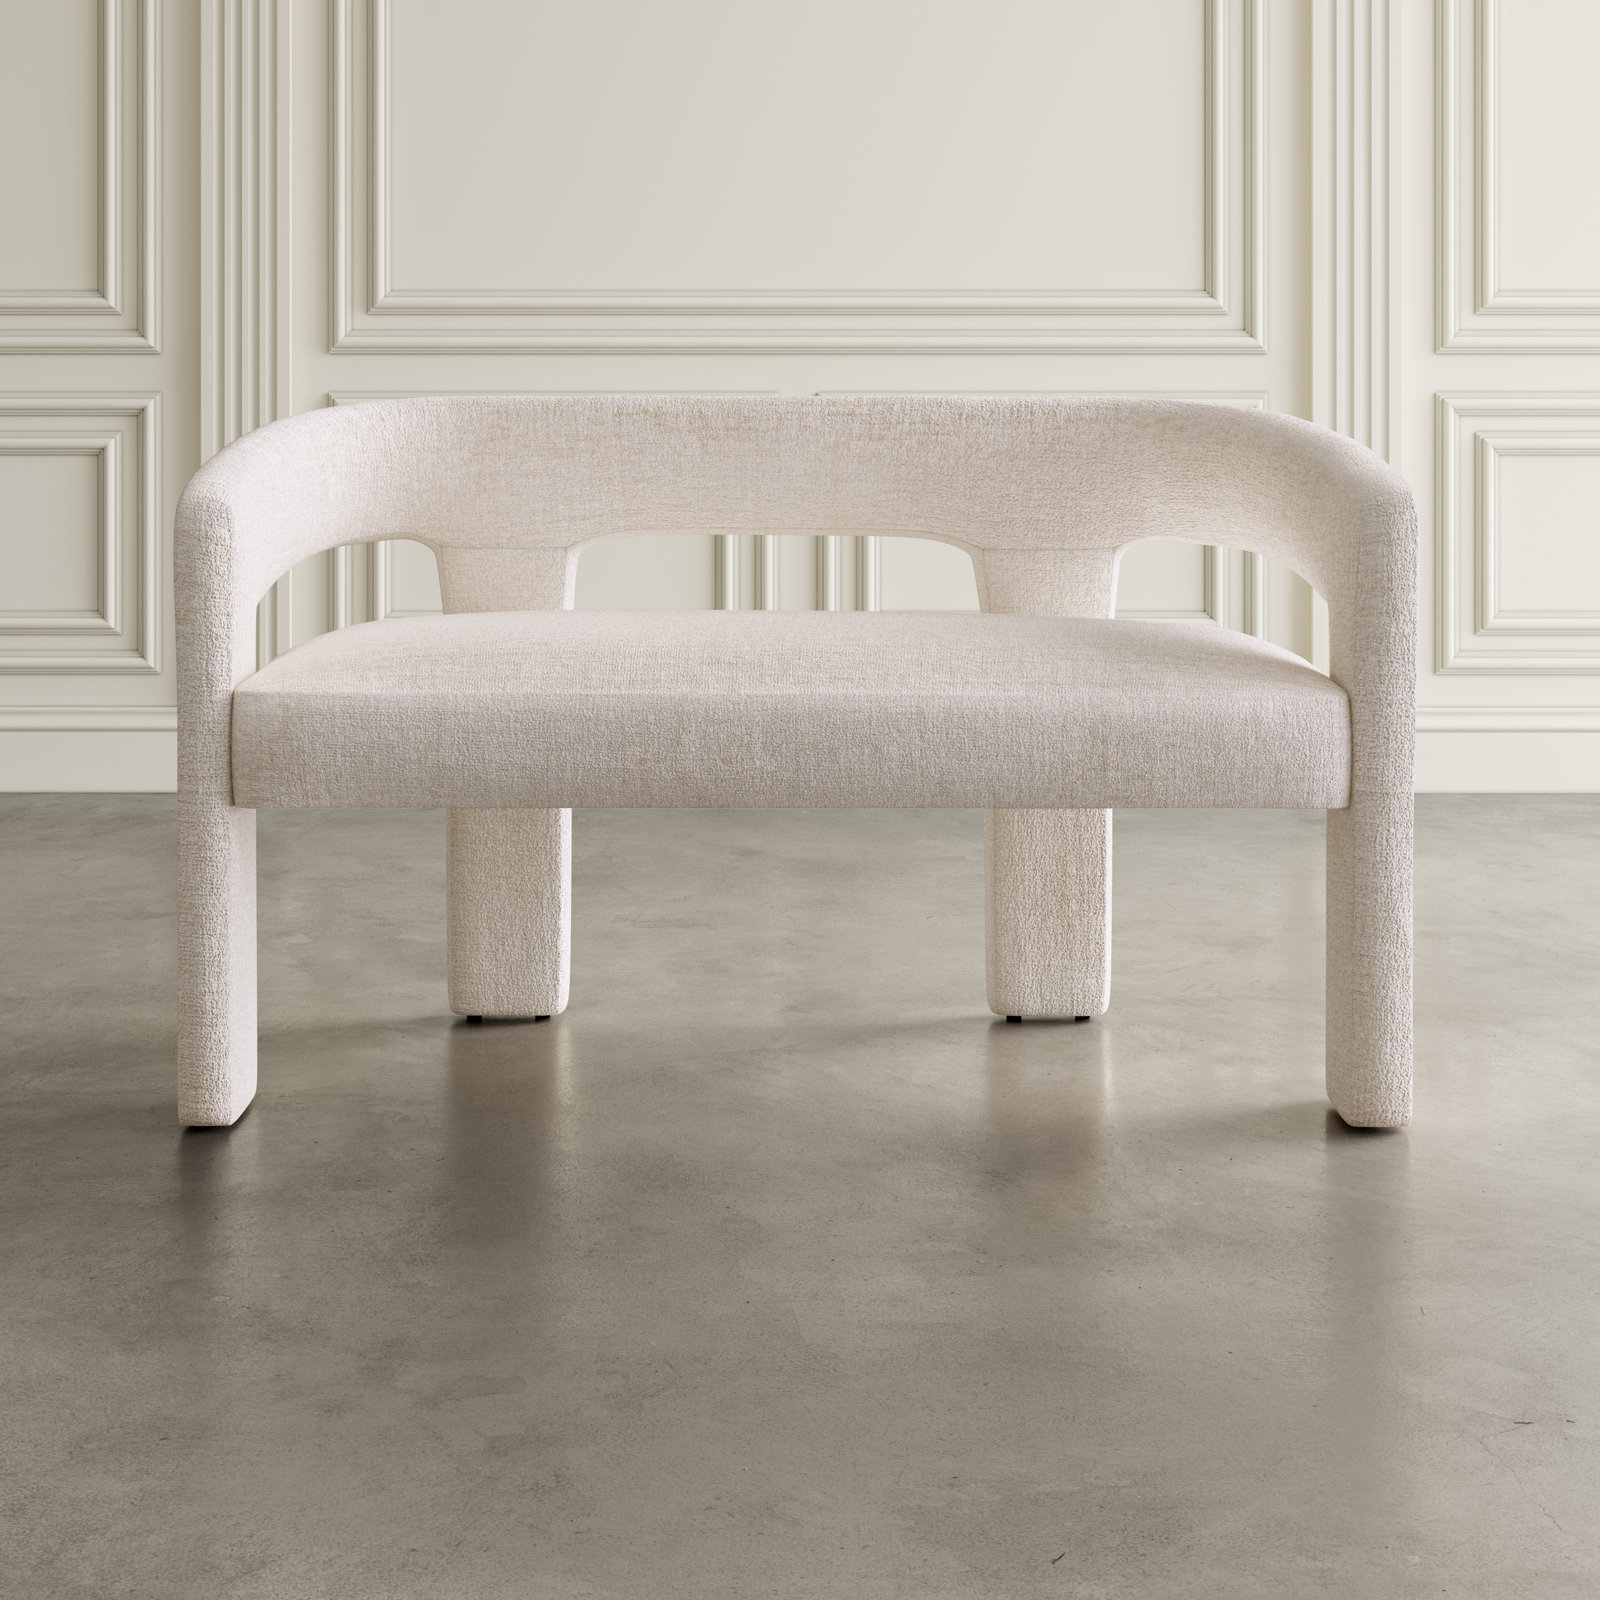 Orren Ellis Henrica Luxury Upholstered Bench